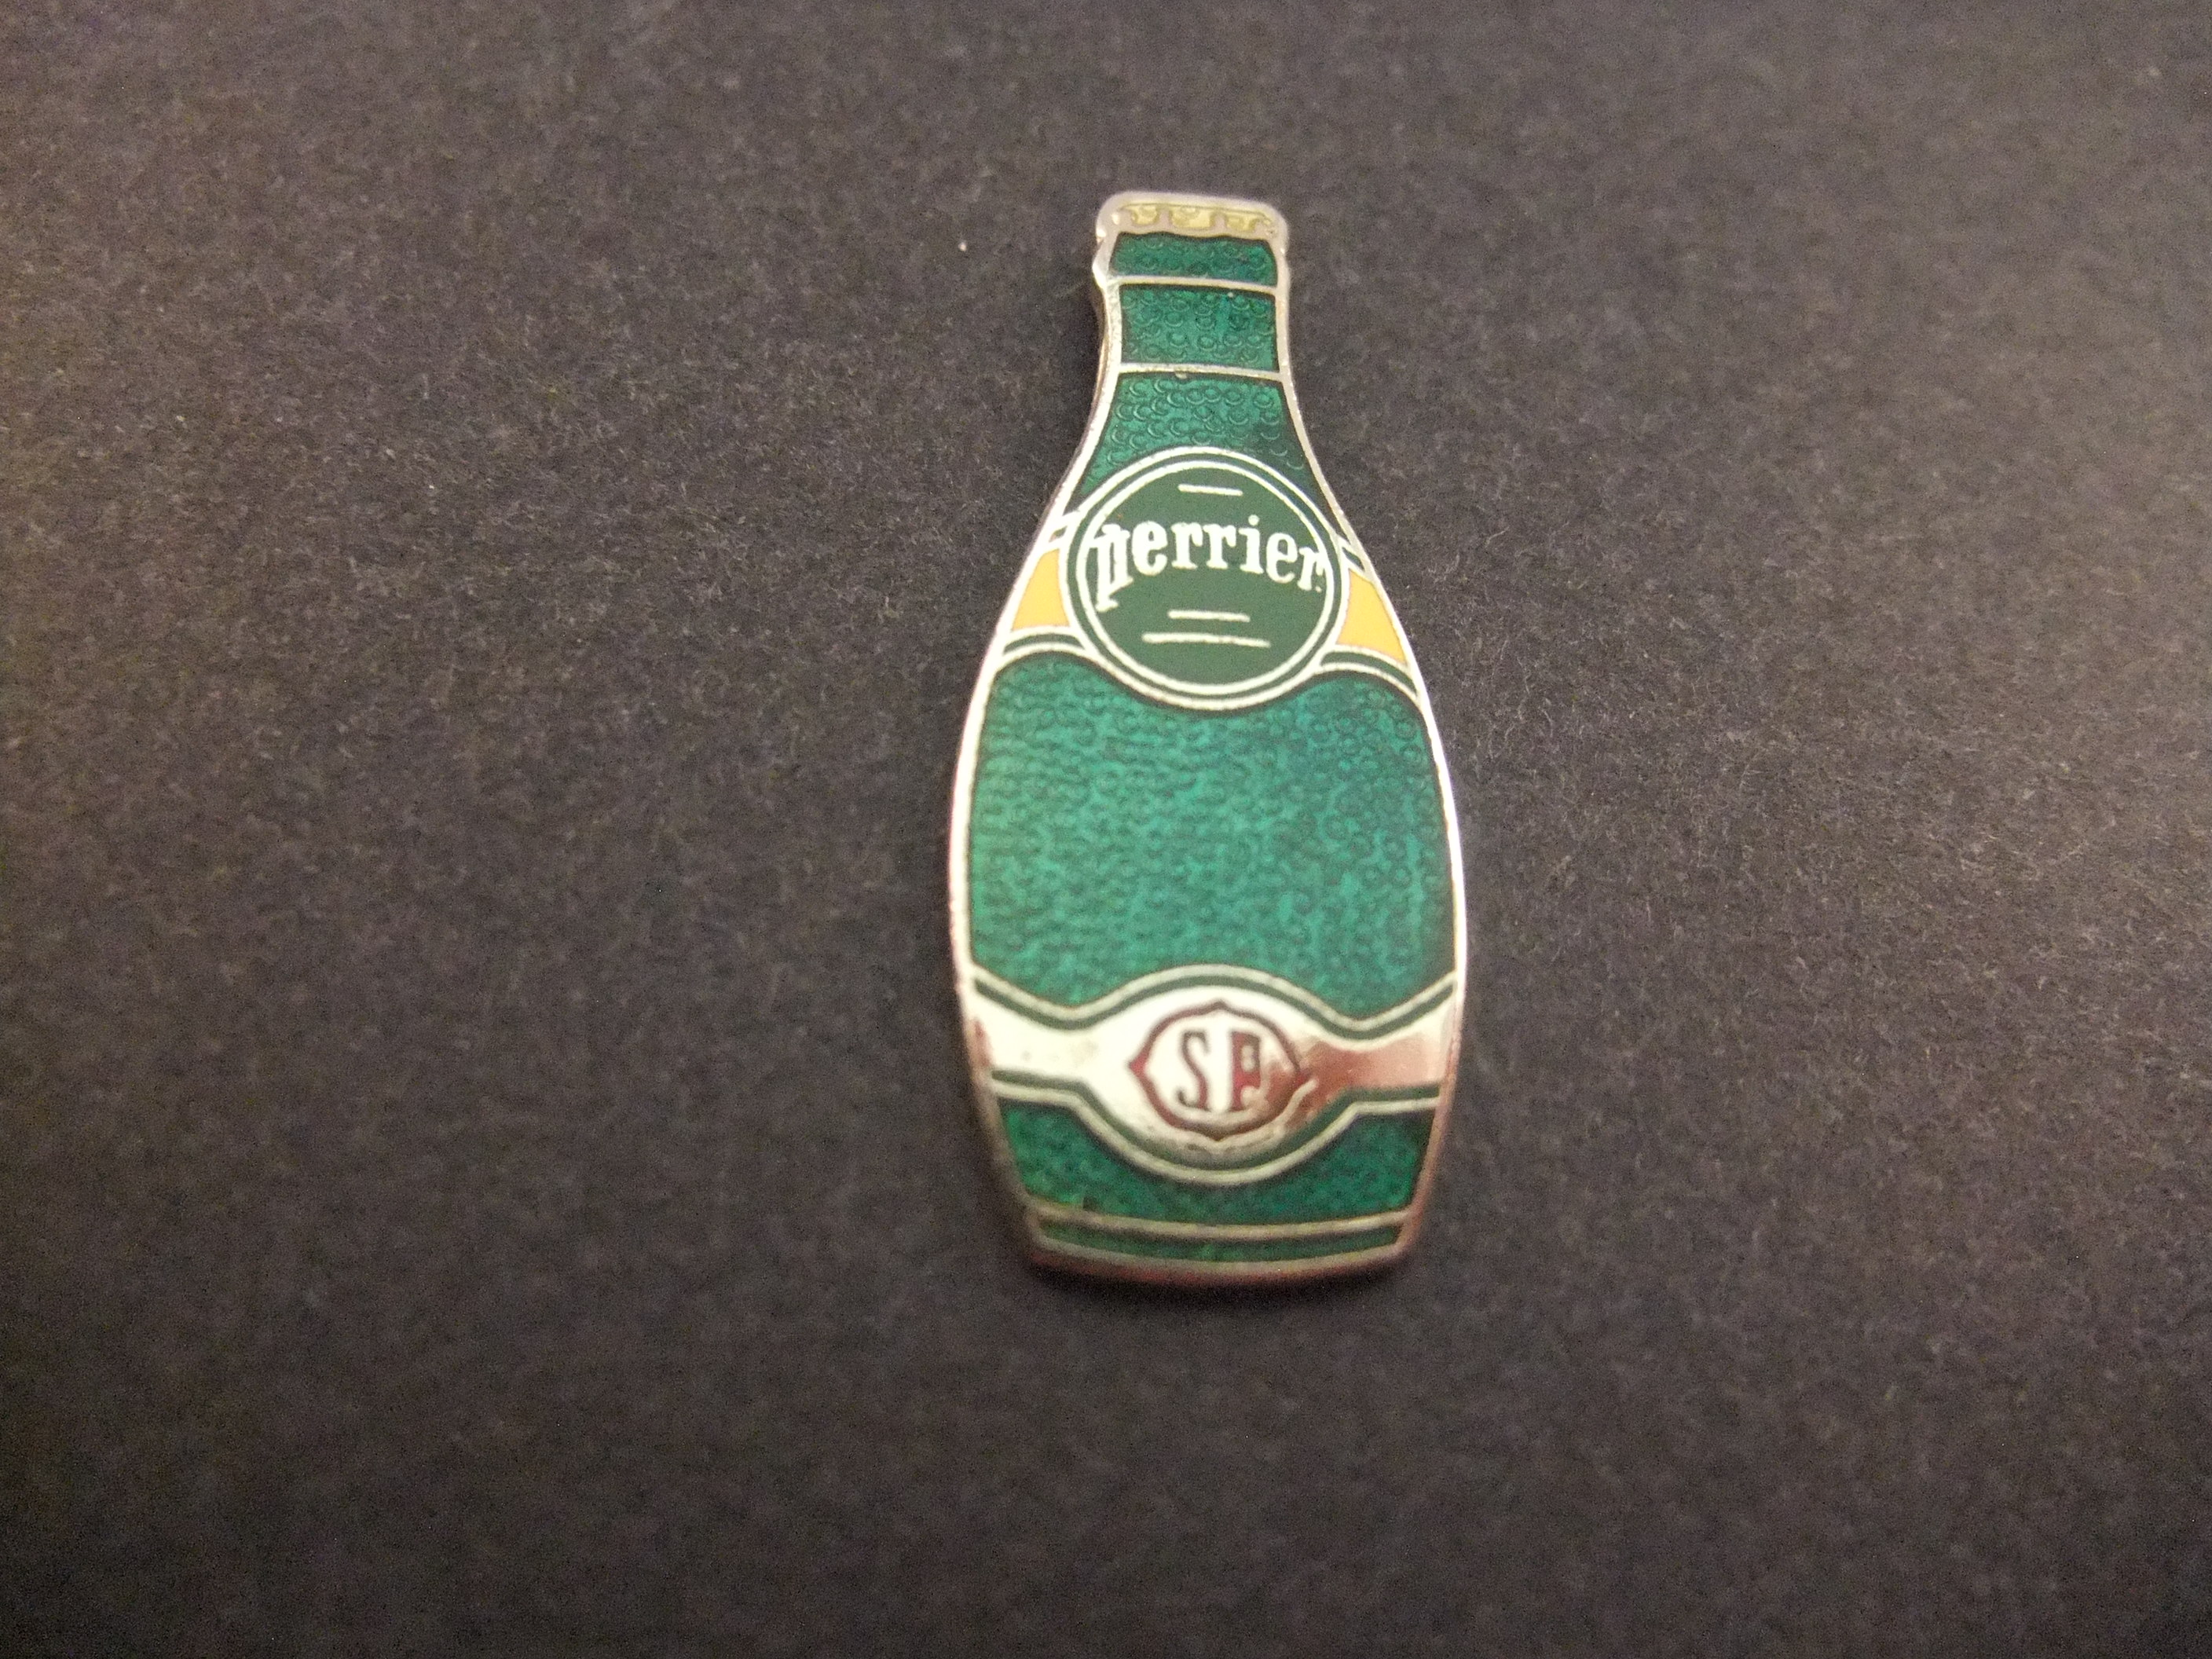 Perrier (SP) bronwater groene fles